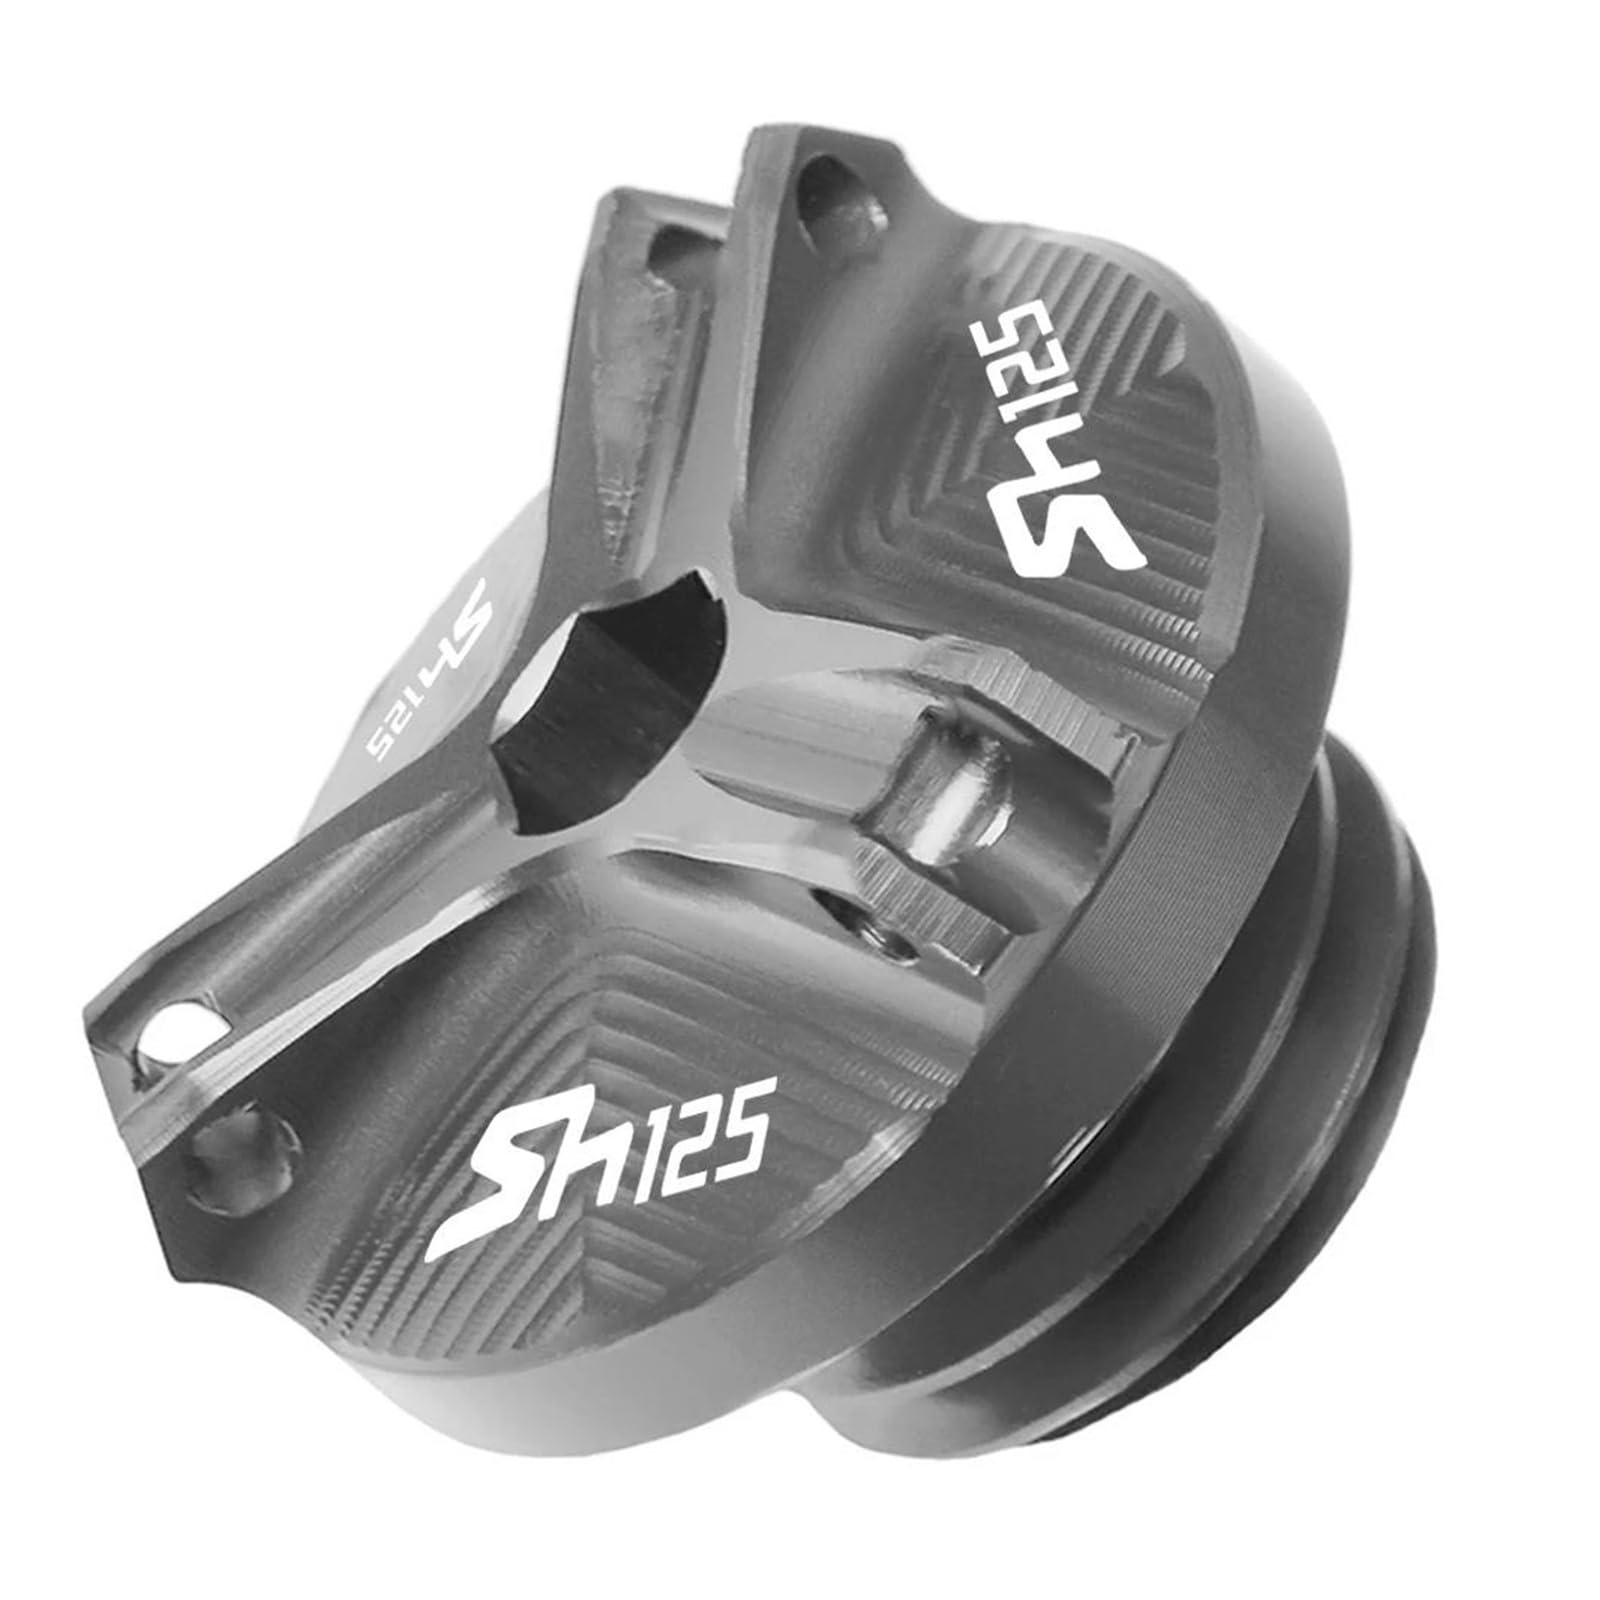 Motorrad-Öldeckel Für SH125 SH 125 2014-2018 Motorrad Aluminium M20 * 2,5 Motoröl Filter Tasse Stecker Abdeckung Schraube(Grau) von bzsdrui